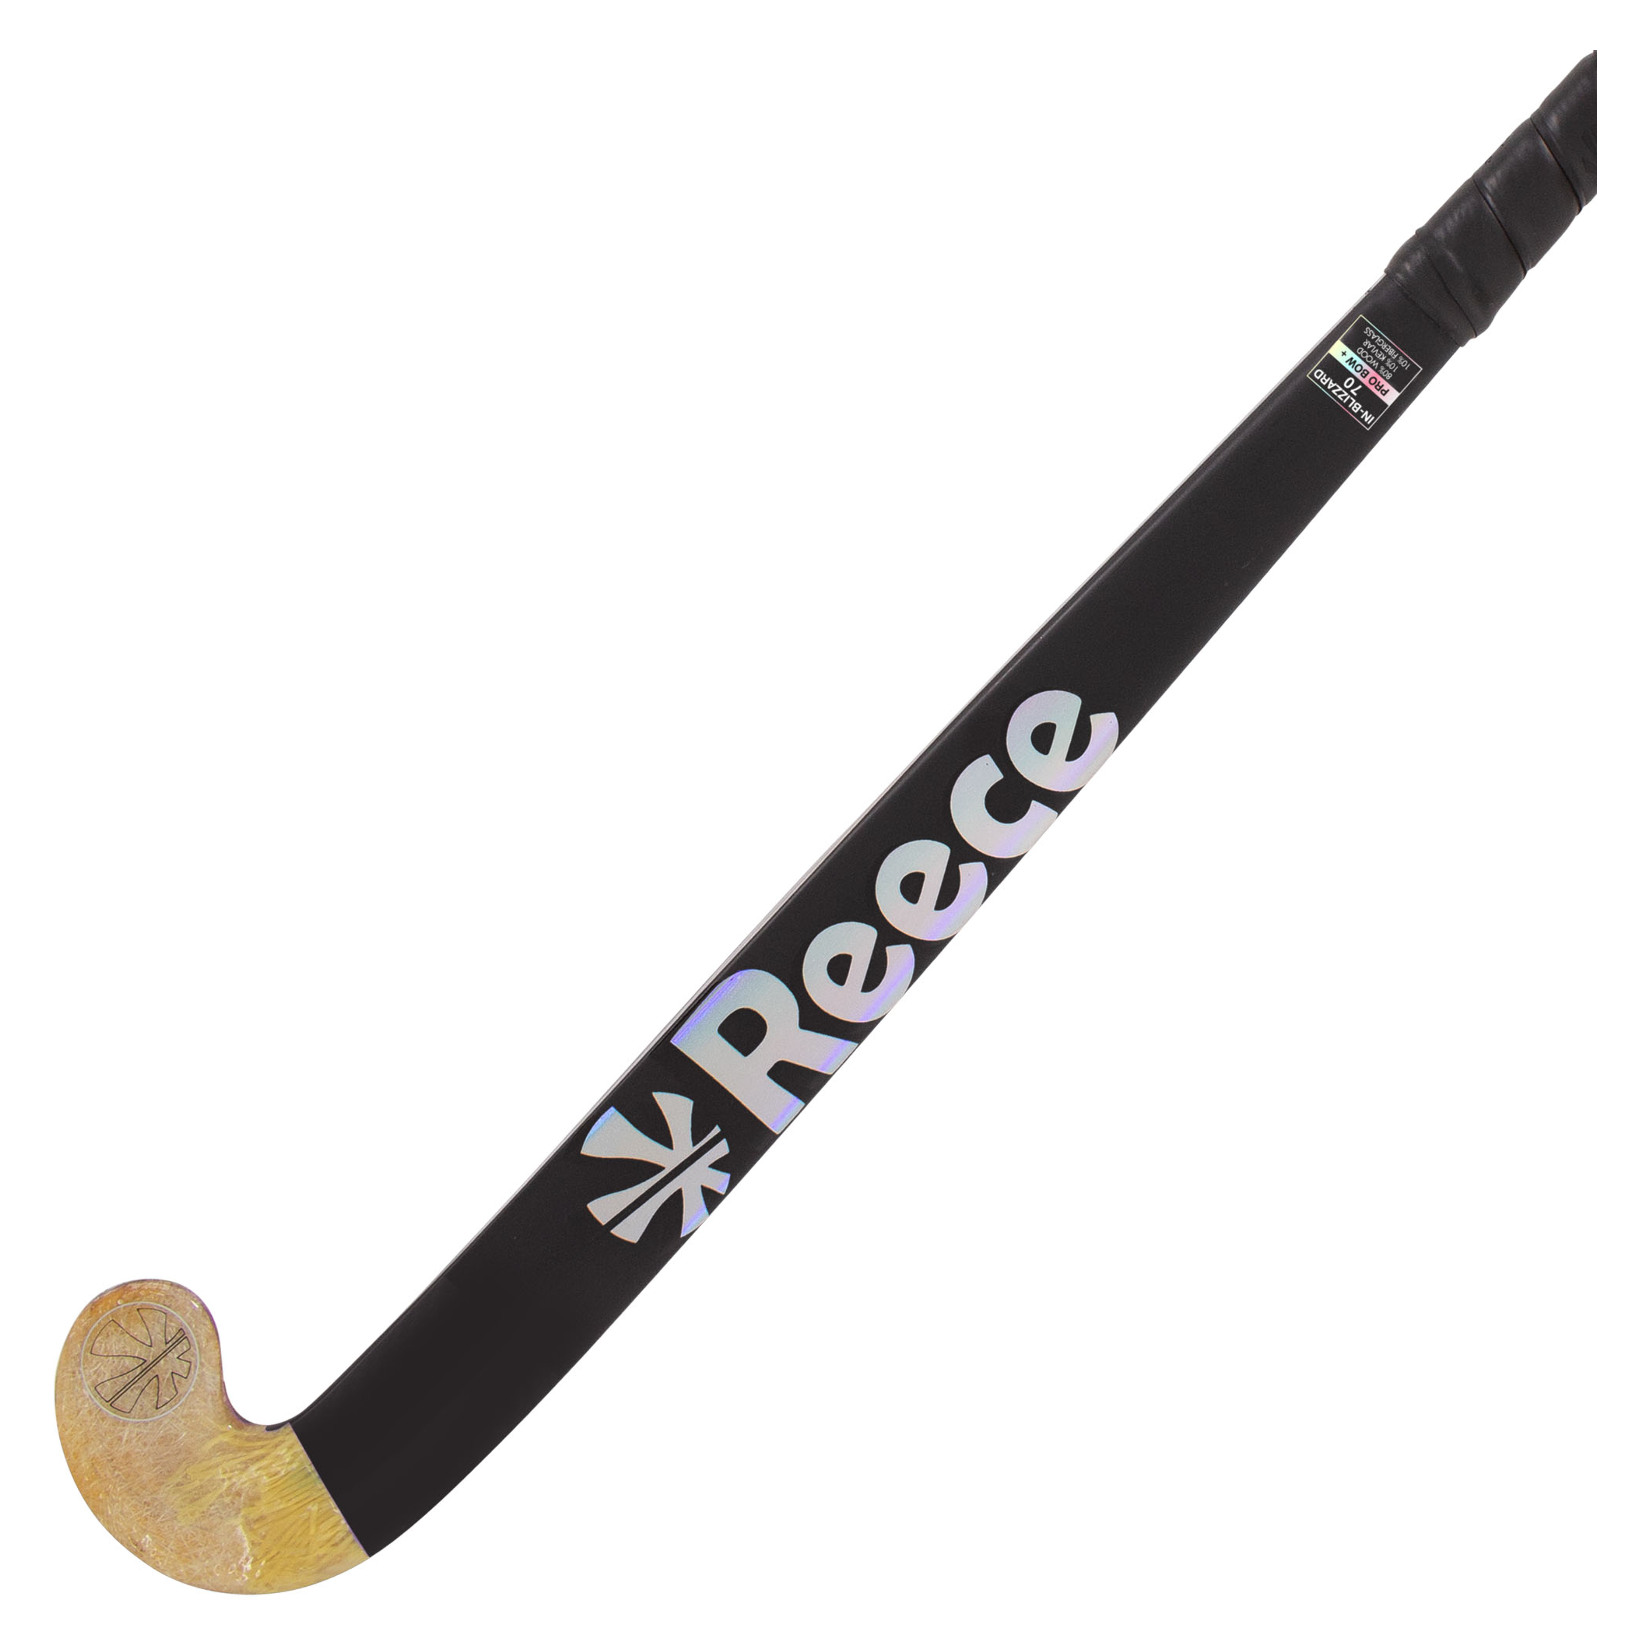 Reece IN-Blizzard 70 Hockey Stick